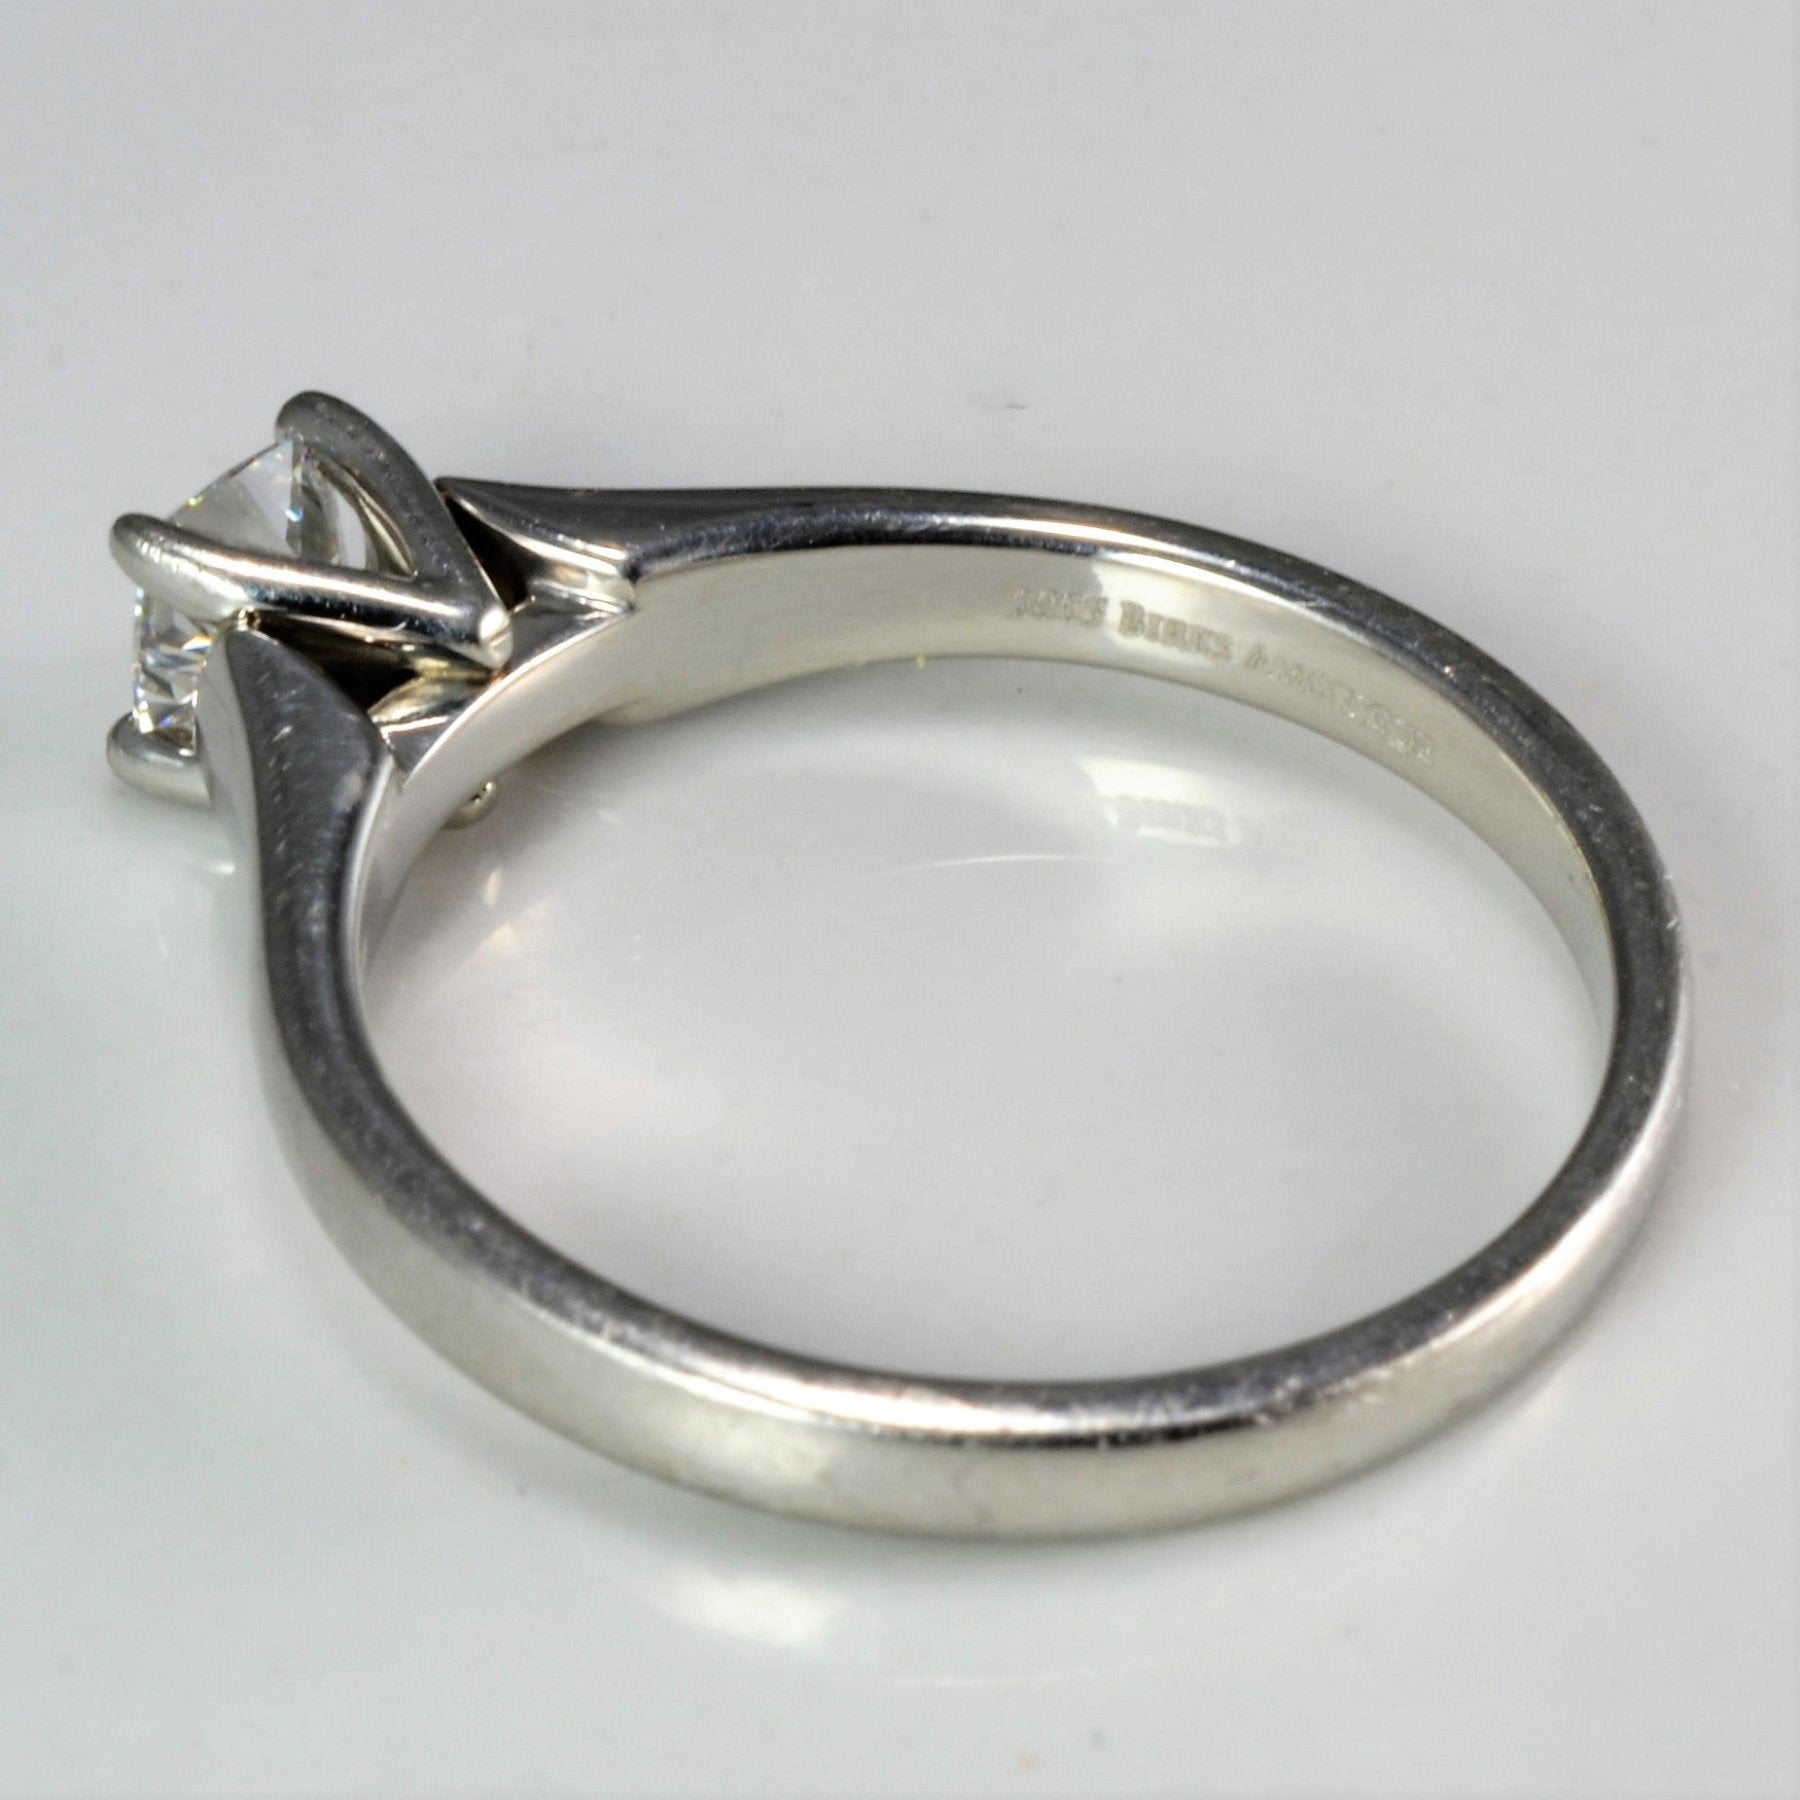 'Birks' Amorique Solitaire Diamond Ring | 0.32 ct | SZ 5.5 | - 100 Ways